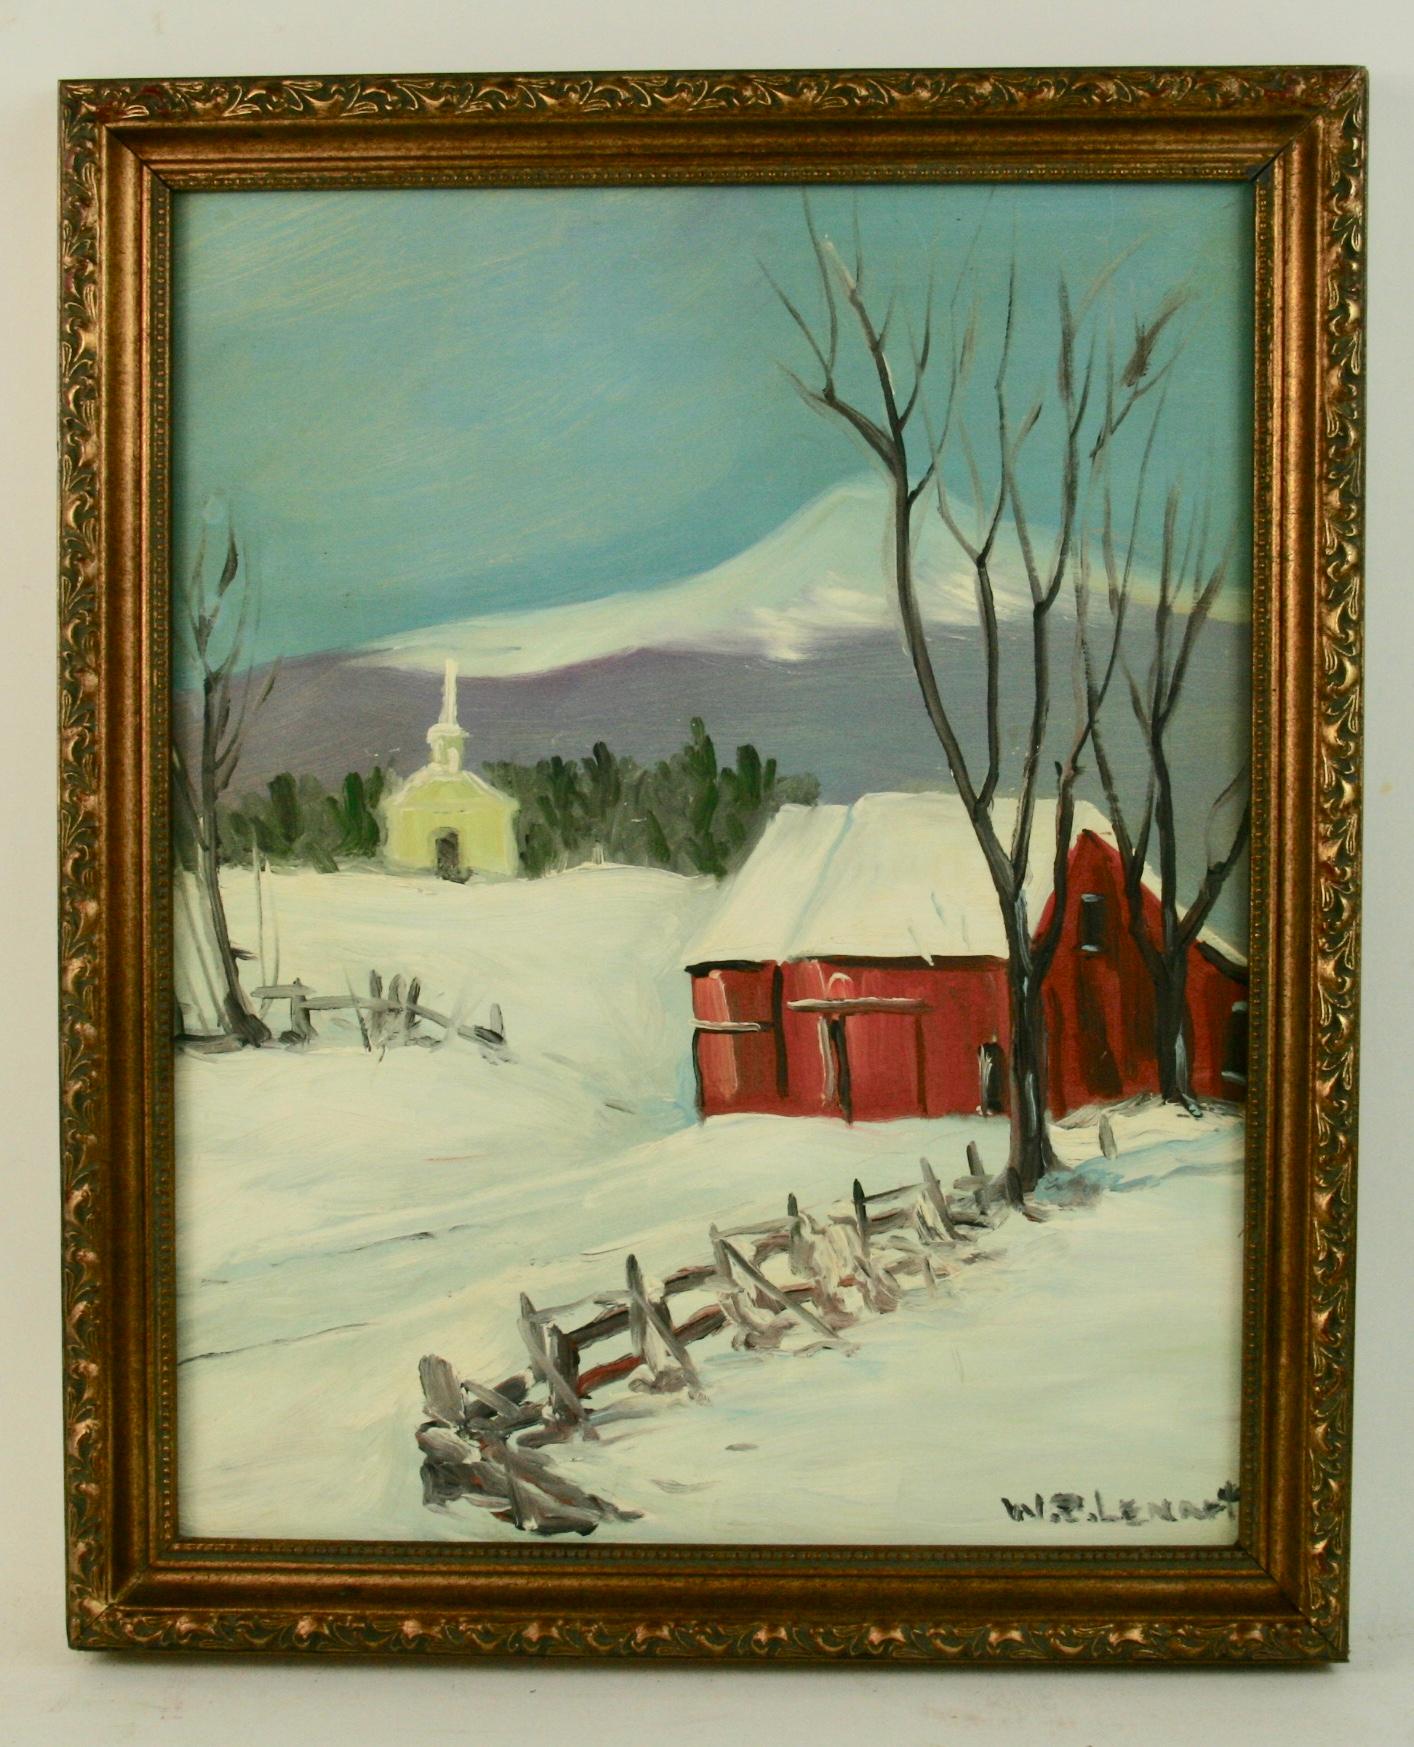 W.R.Lenart Landscape Painting - New England Winter Landscape 1940's